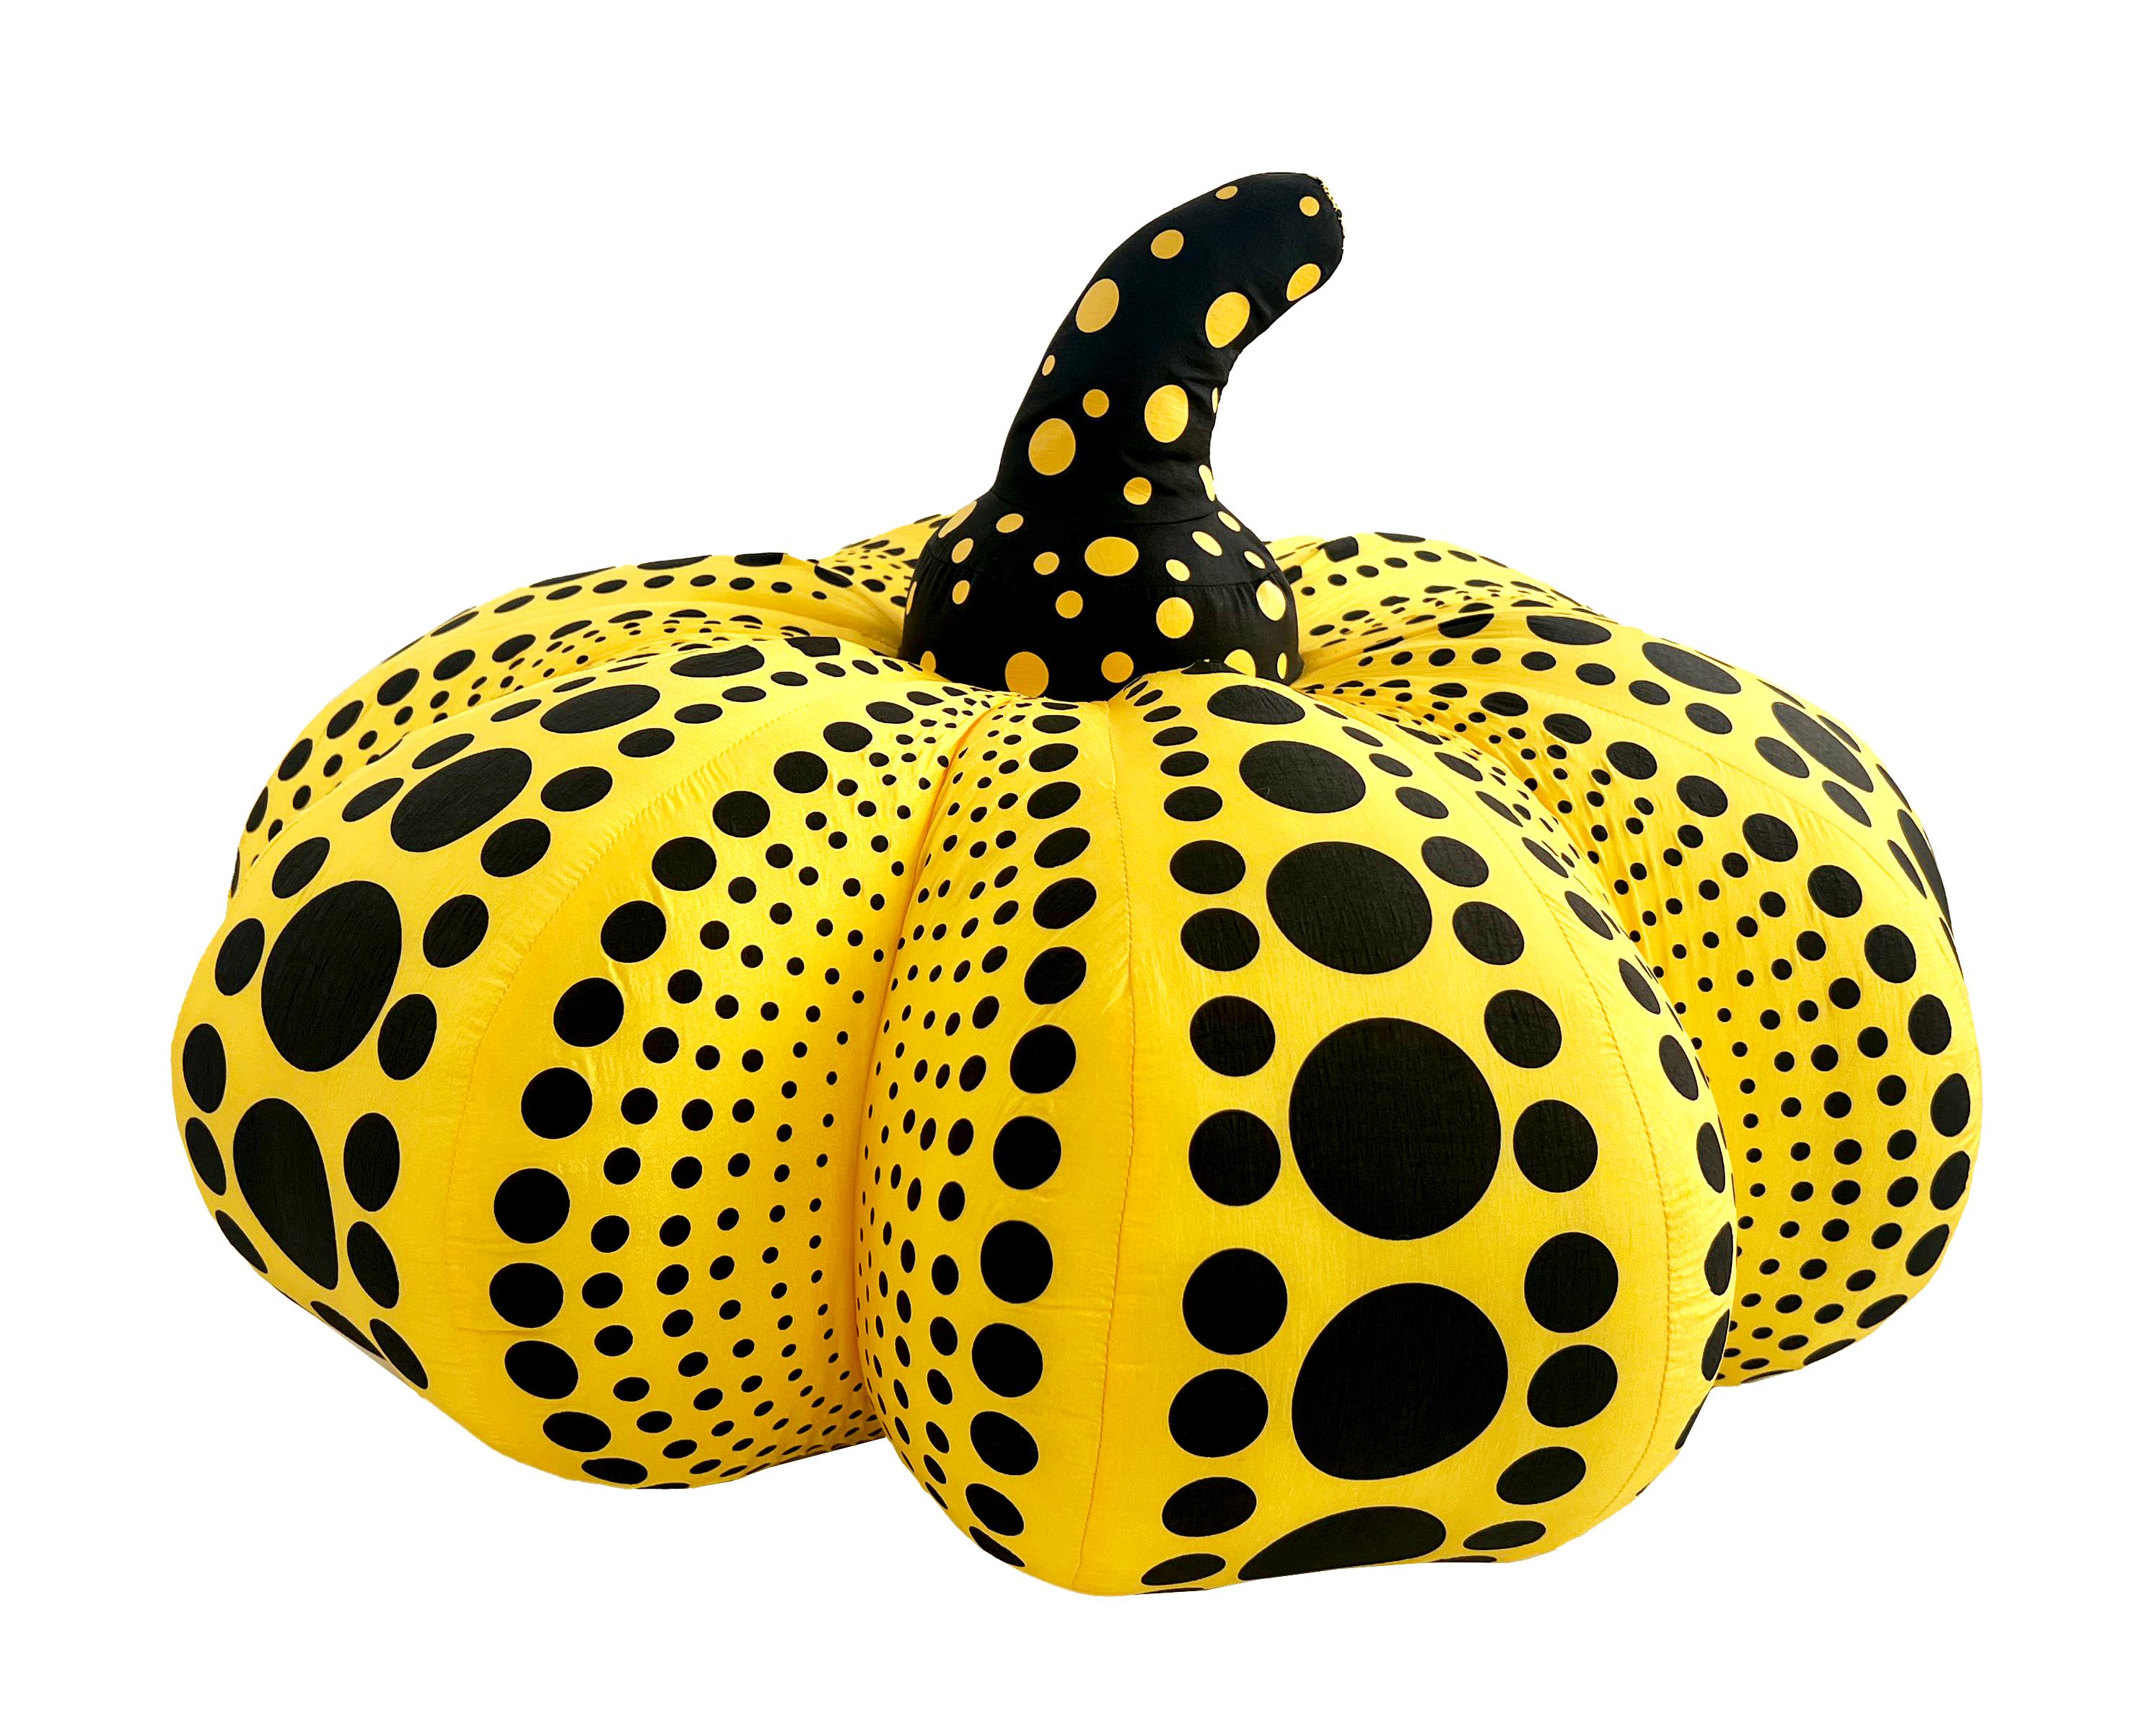 Yayoi Kusama Satz von 3 Plüschkürbisse: Gelb und Schwarz (groß), Rot & Weiß und Gelb & Schwarz (die 2 kleineren):

Ein ikonisches, farbenfrohes Pop-Art-Set - diese Kusama-Plüschkürbisse weisen die universellen Polka-Dot-Muster und kräftigen Farben